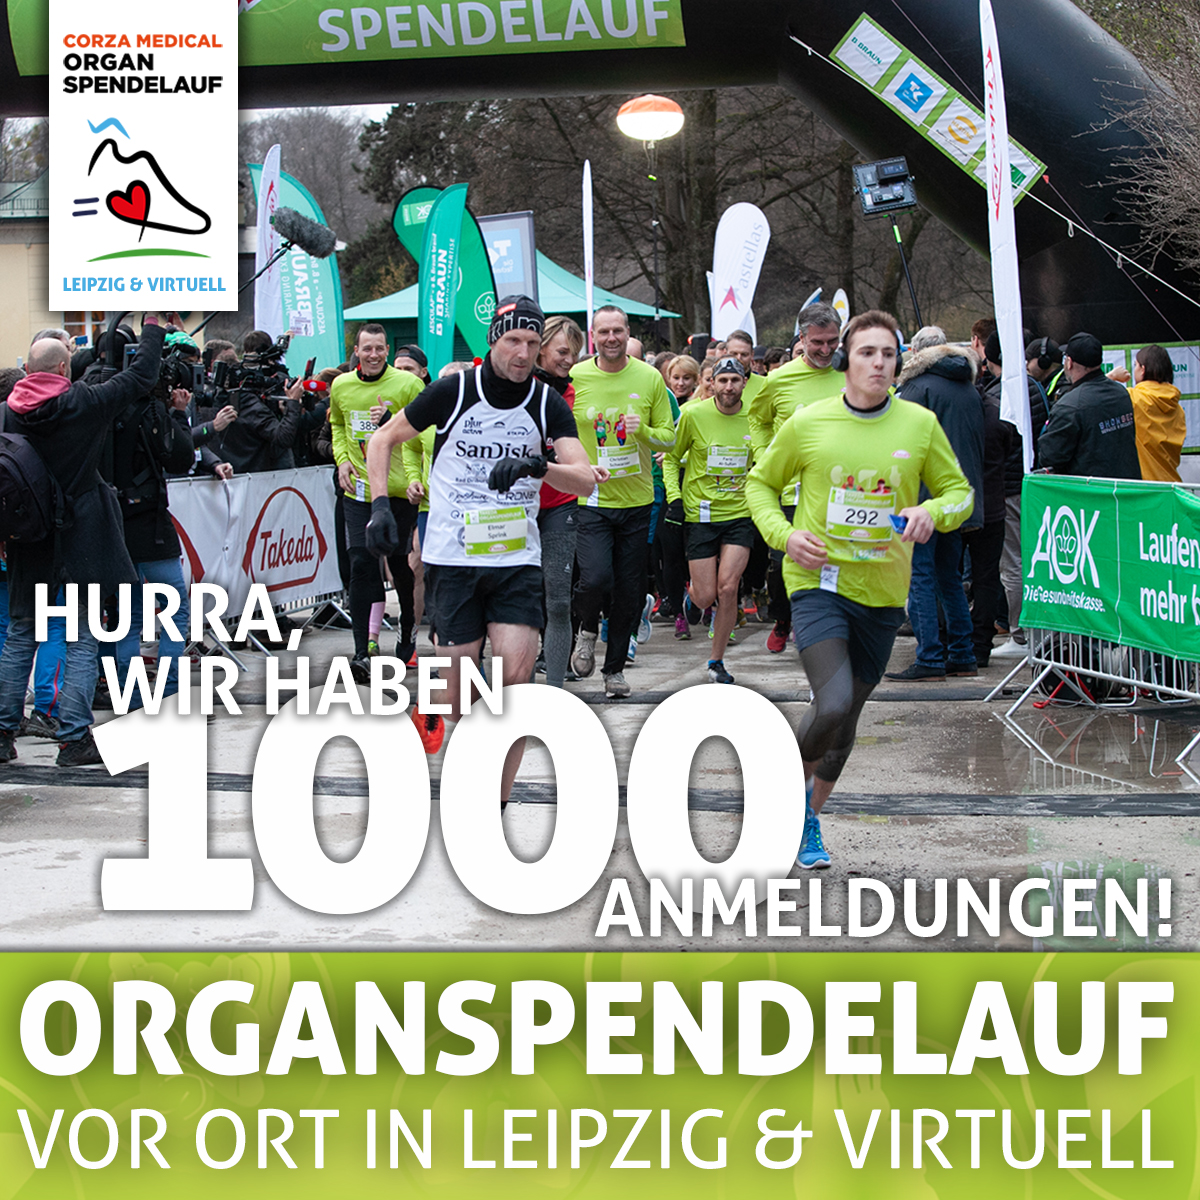 Schon 1000 #läufer #laufen beim #organspendelauf in #leipzig und #virtuell mit! Bist du am 8.4. dabei? organspendelauf.de #run4lives #organspende #lebenretten #running #runnerslife #lebensretter #heldendesalltags #spendenlauf #organspende #runnersoftwitter #run #organdonor